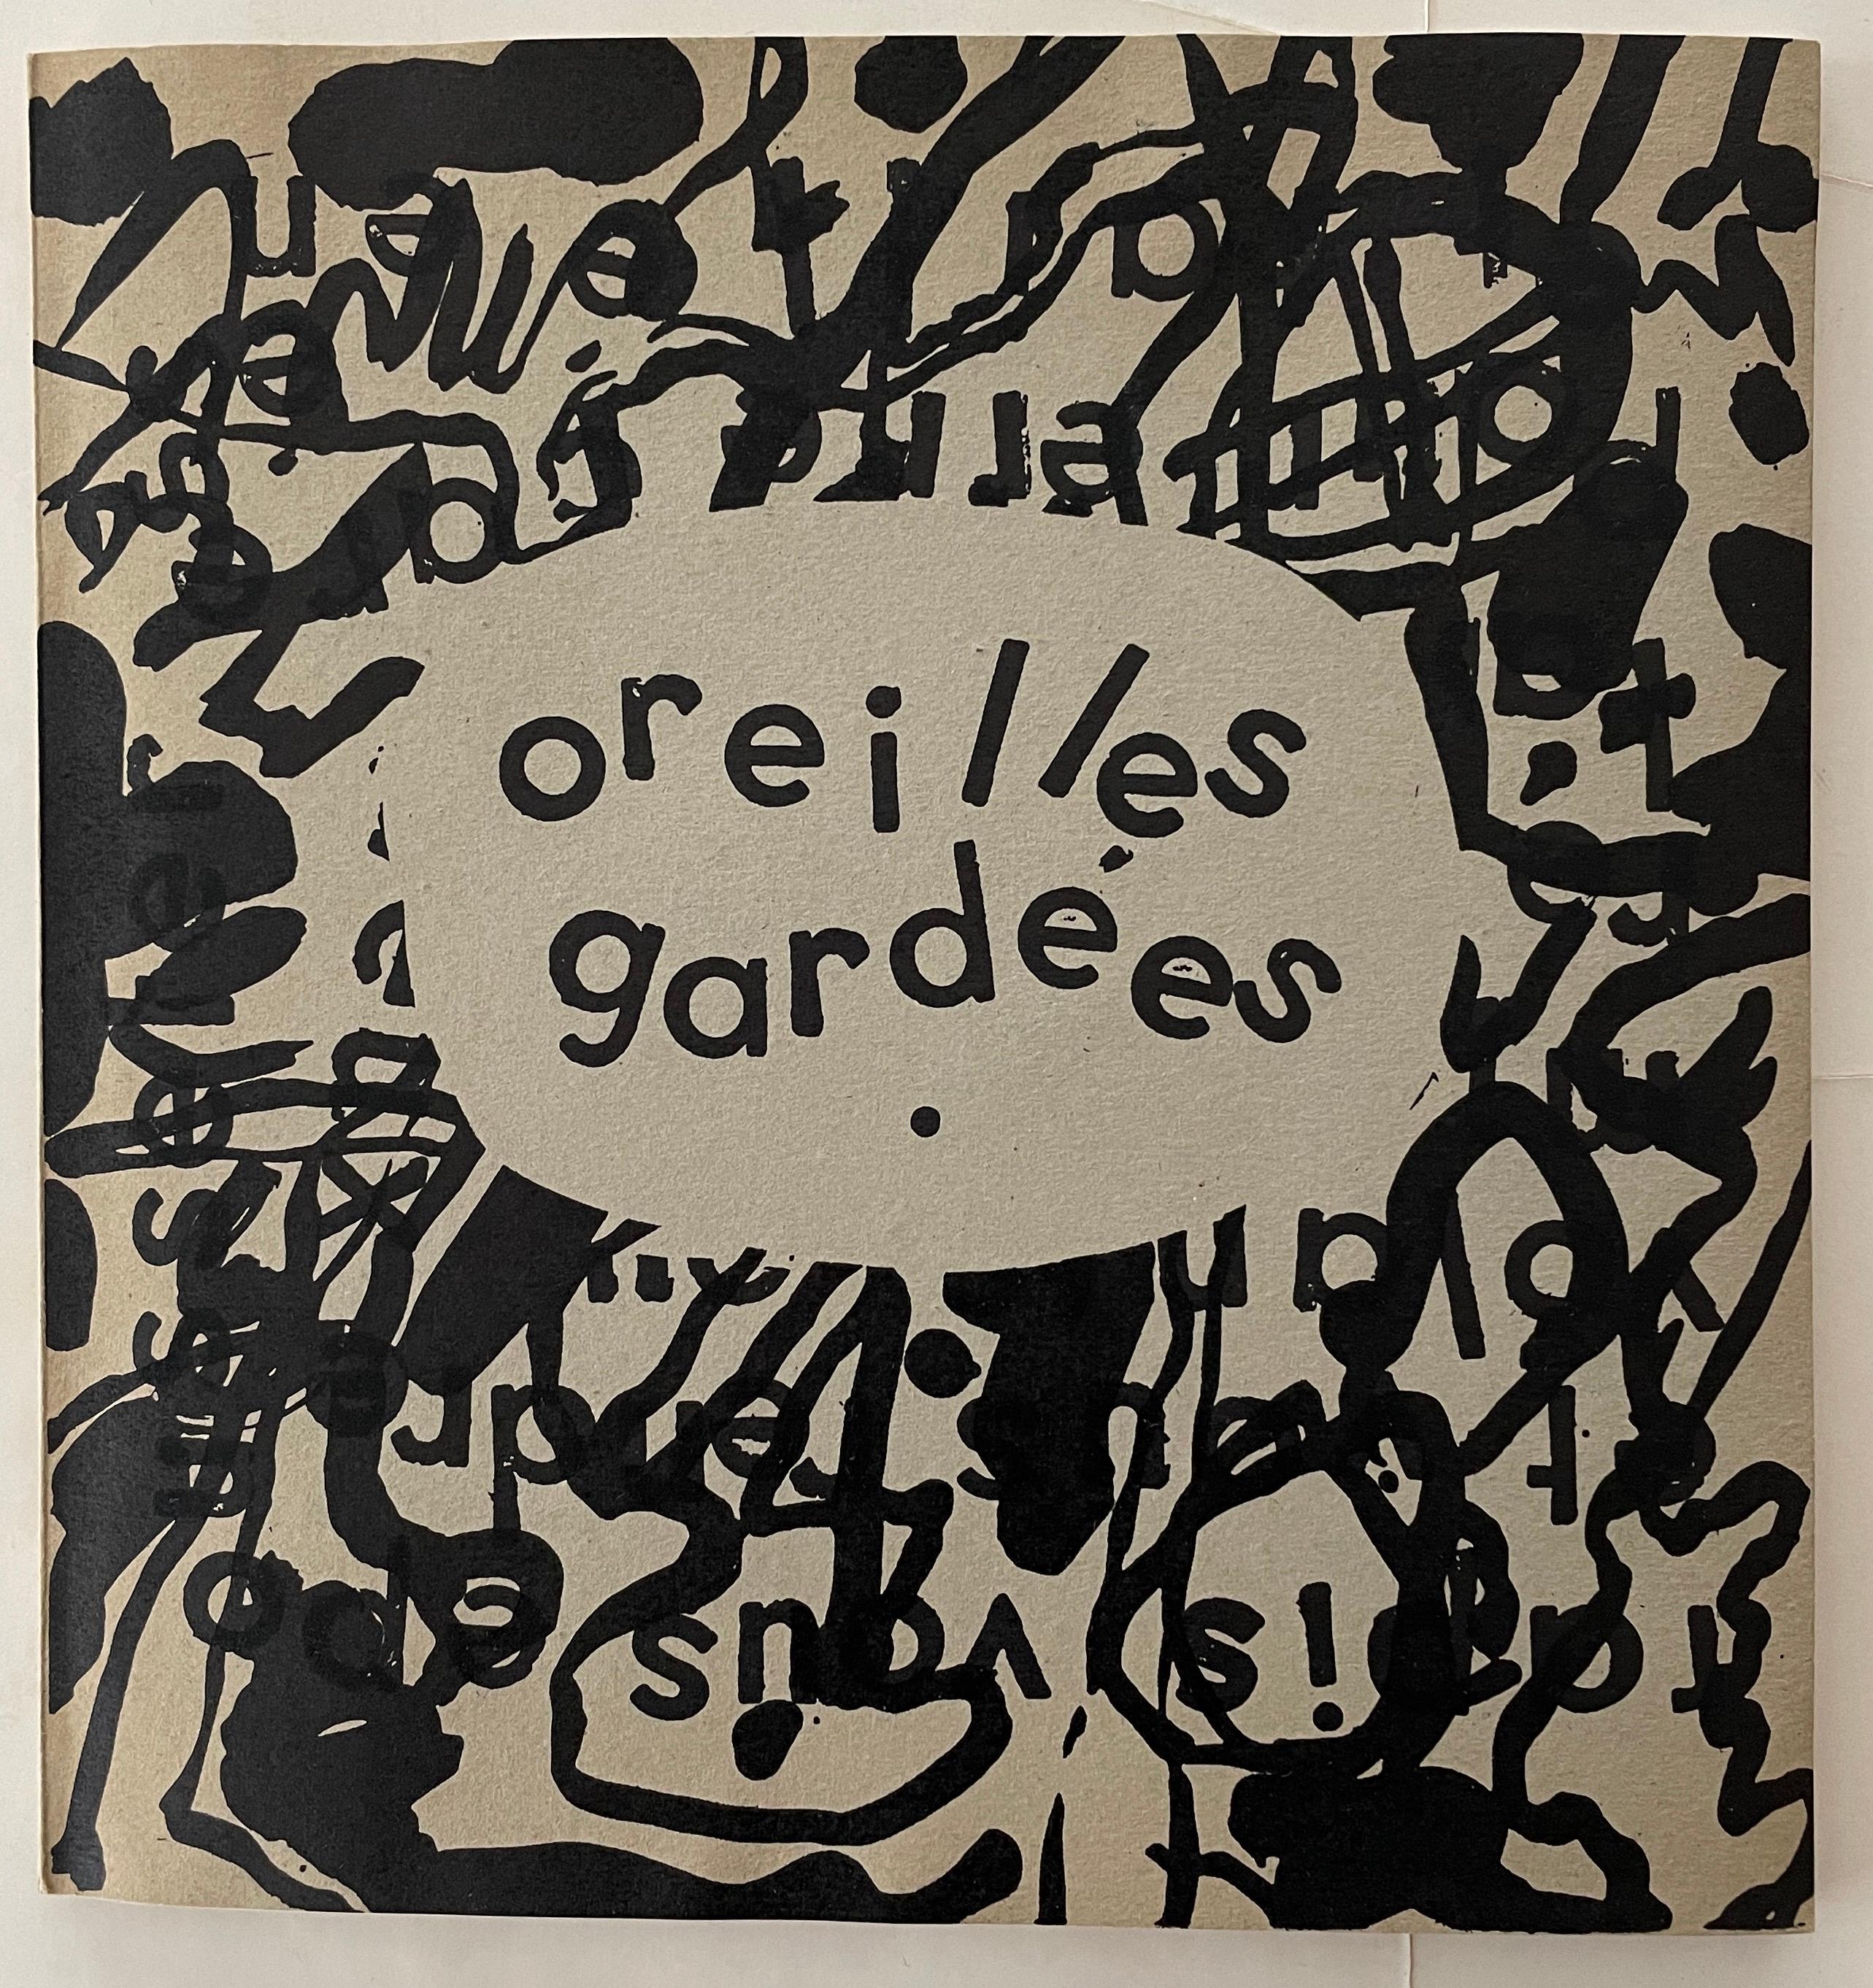 Jean Dubuffet Abstract Print - Oreilles gardees, by P.A. Benoit. Paris: PAB, 1962. 